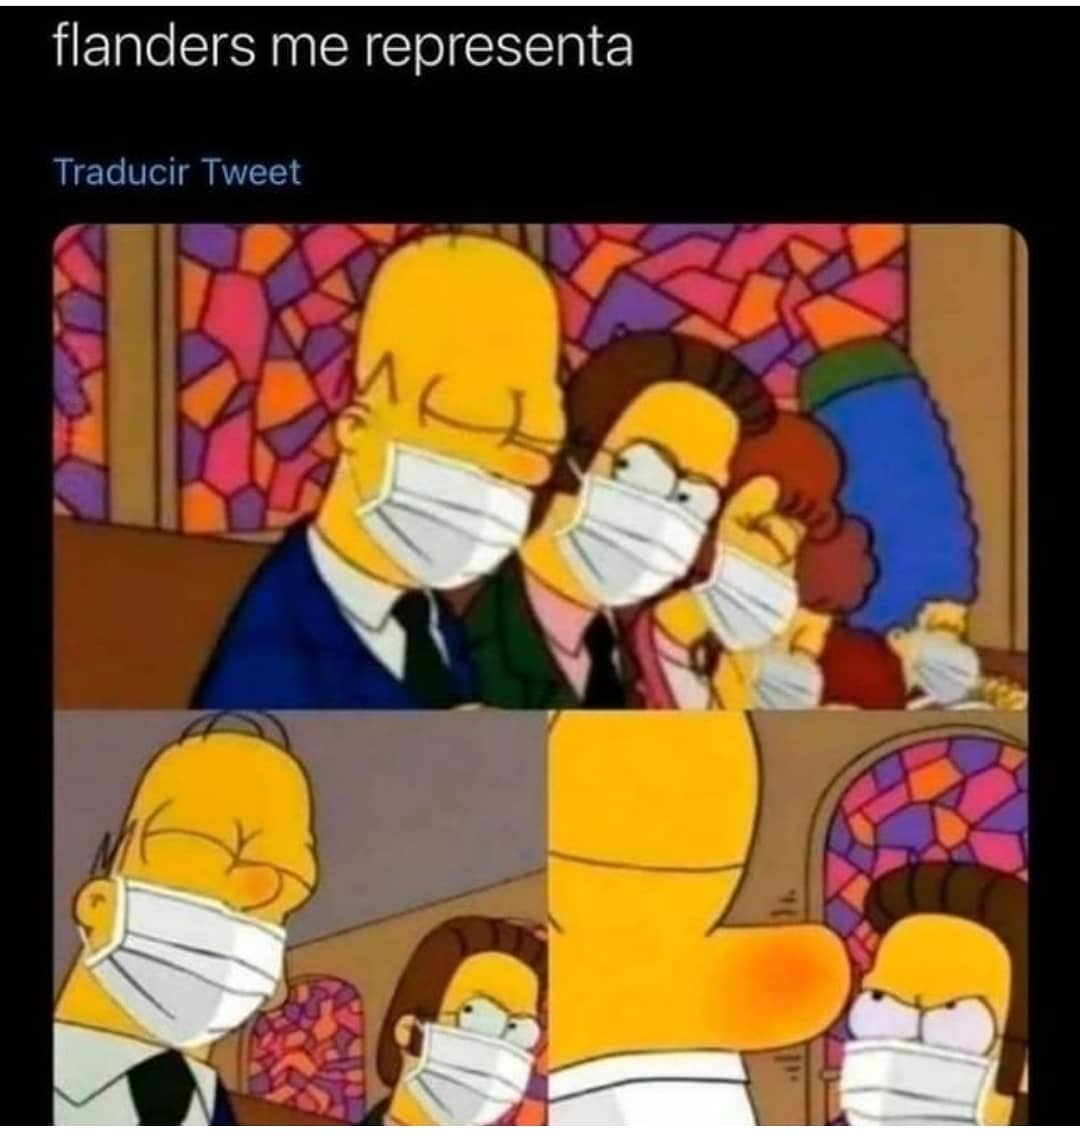 Flanders me representa.